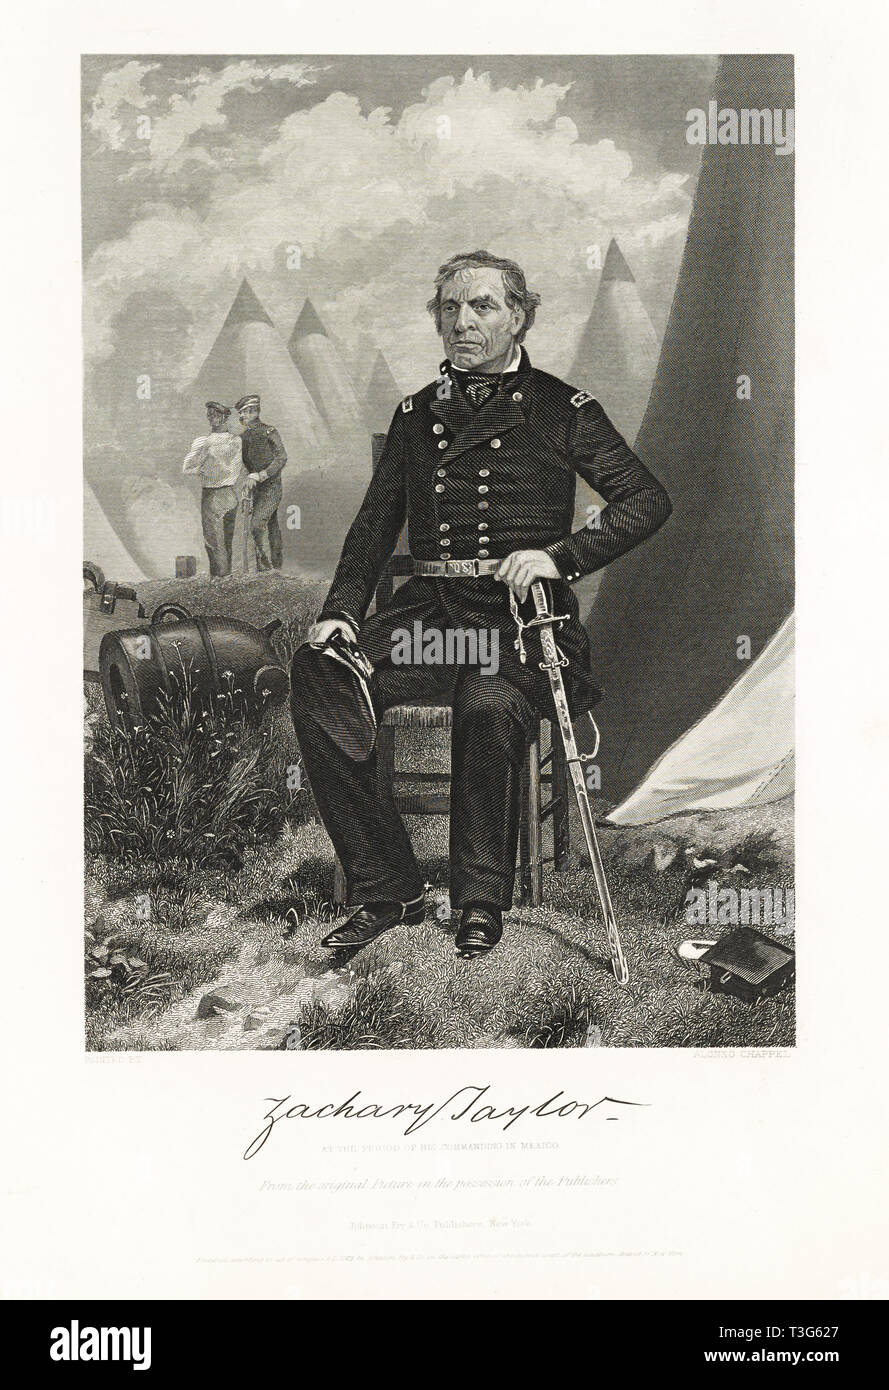 Zachary Taylor, à la période de son commandant au Mexique, gravure par Alonzo Chappel à partir d'une peinture originale, Johnson, Fry & Co. Éditeur, 1863 Banque D'Images